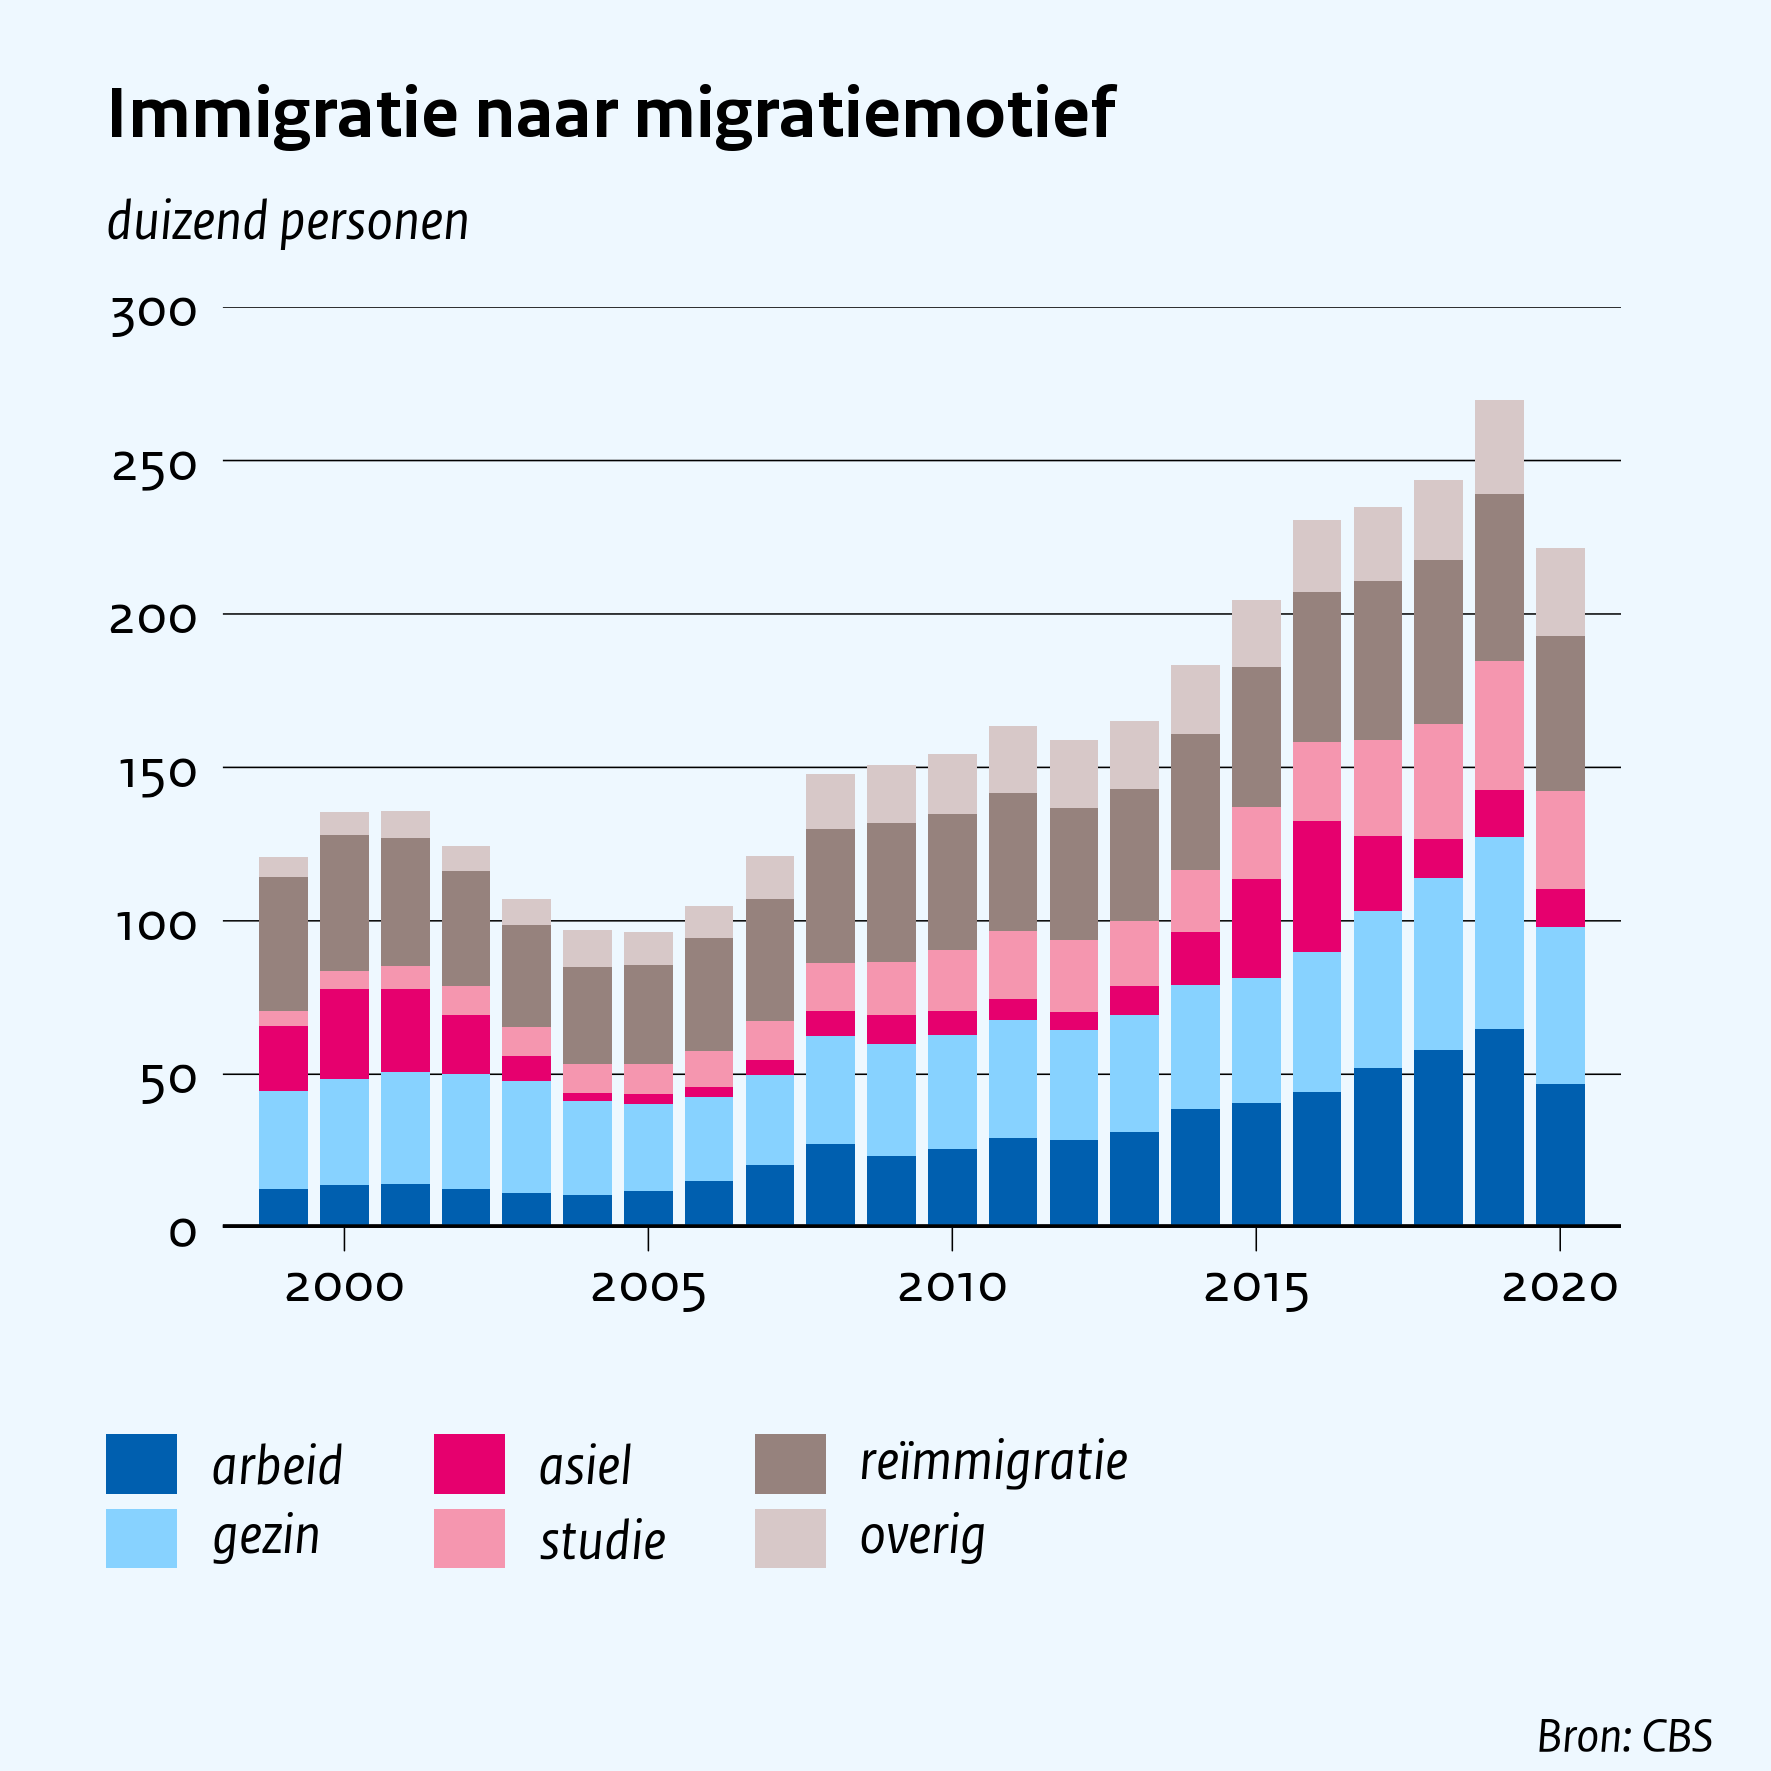 Immigratie naar migratiemotief